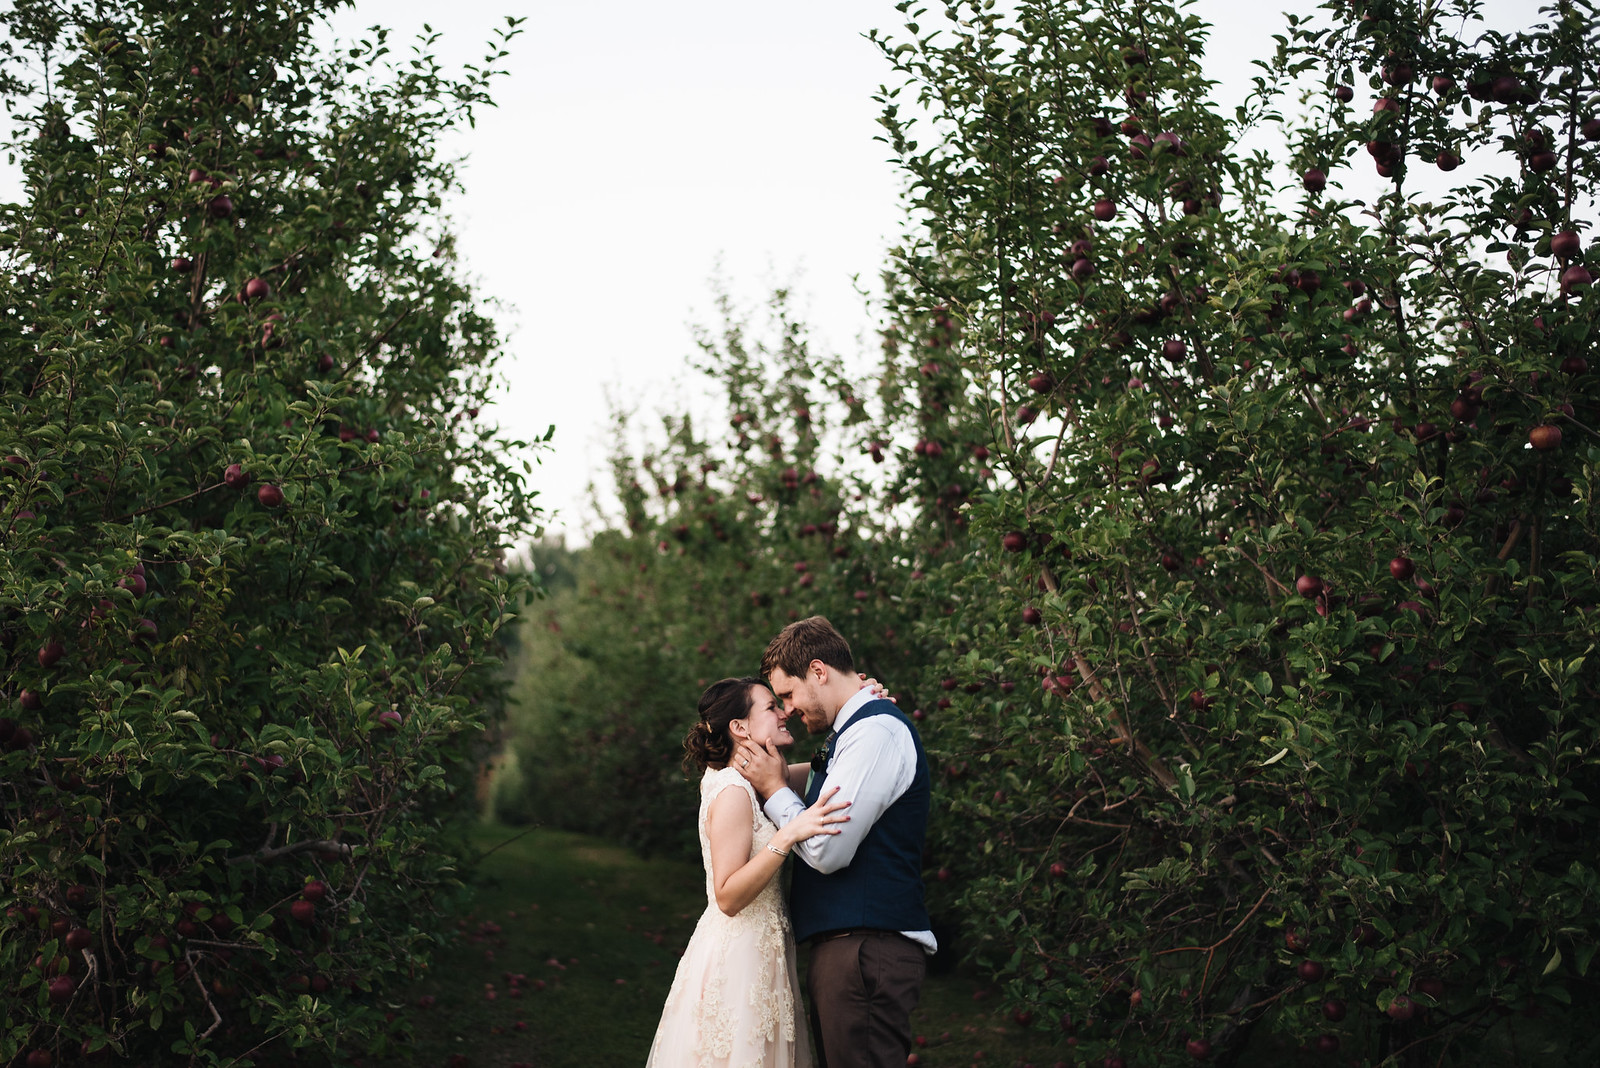 Apple Orchard Weddingon juliettelauraphotography.blogspot.com